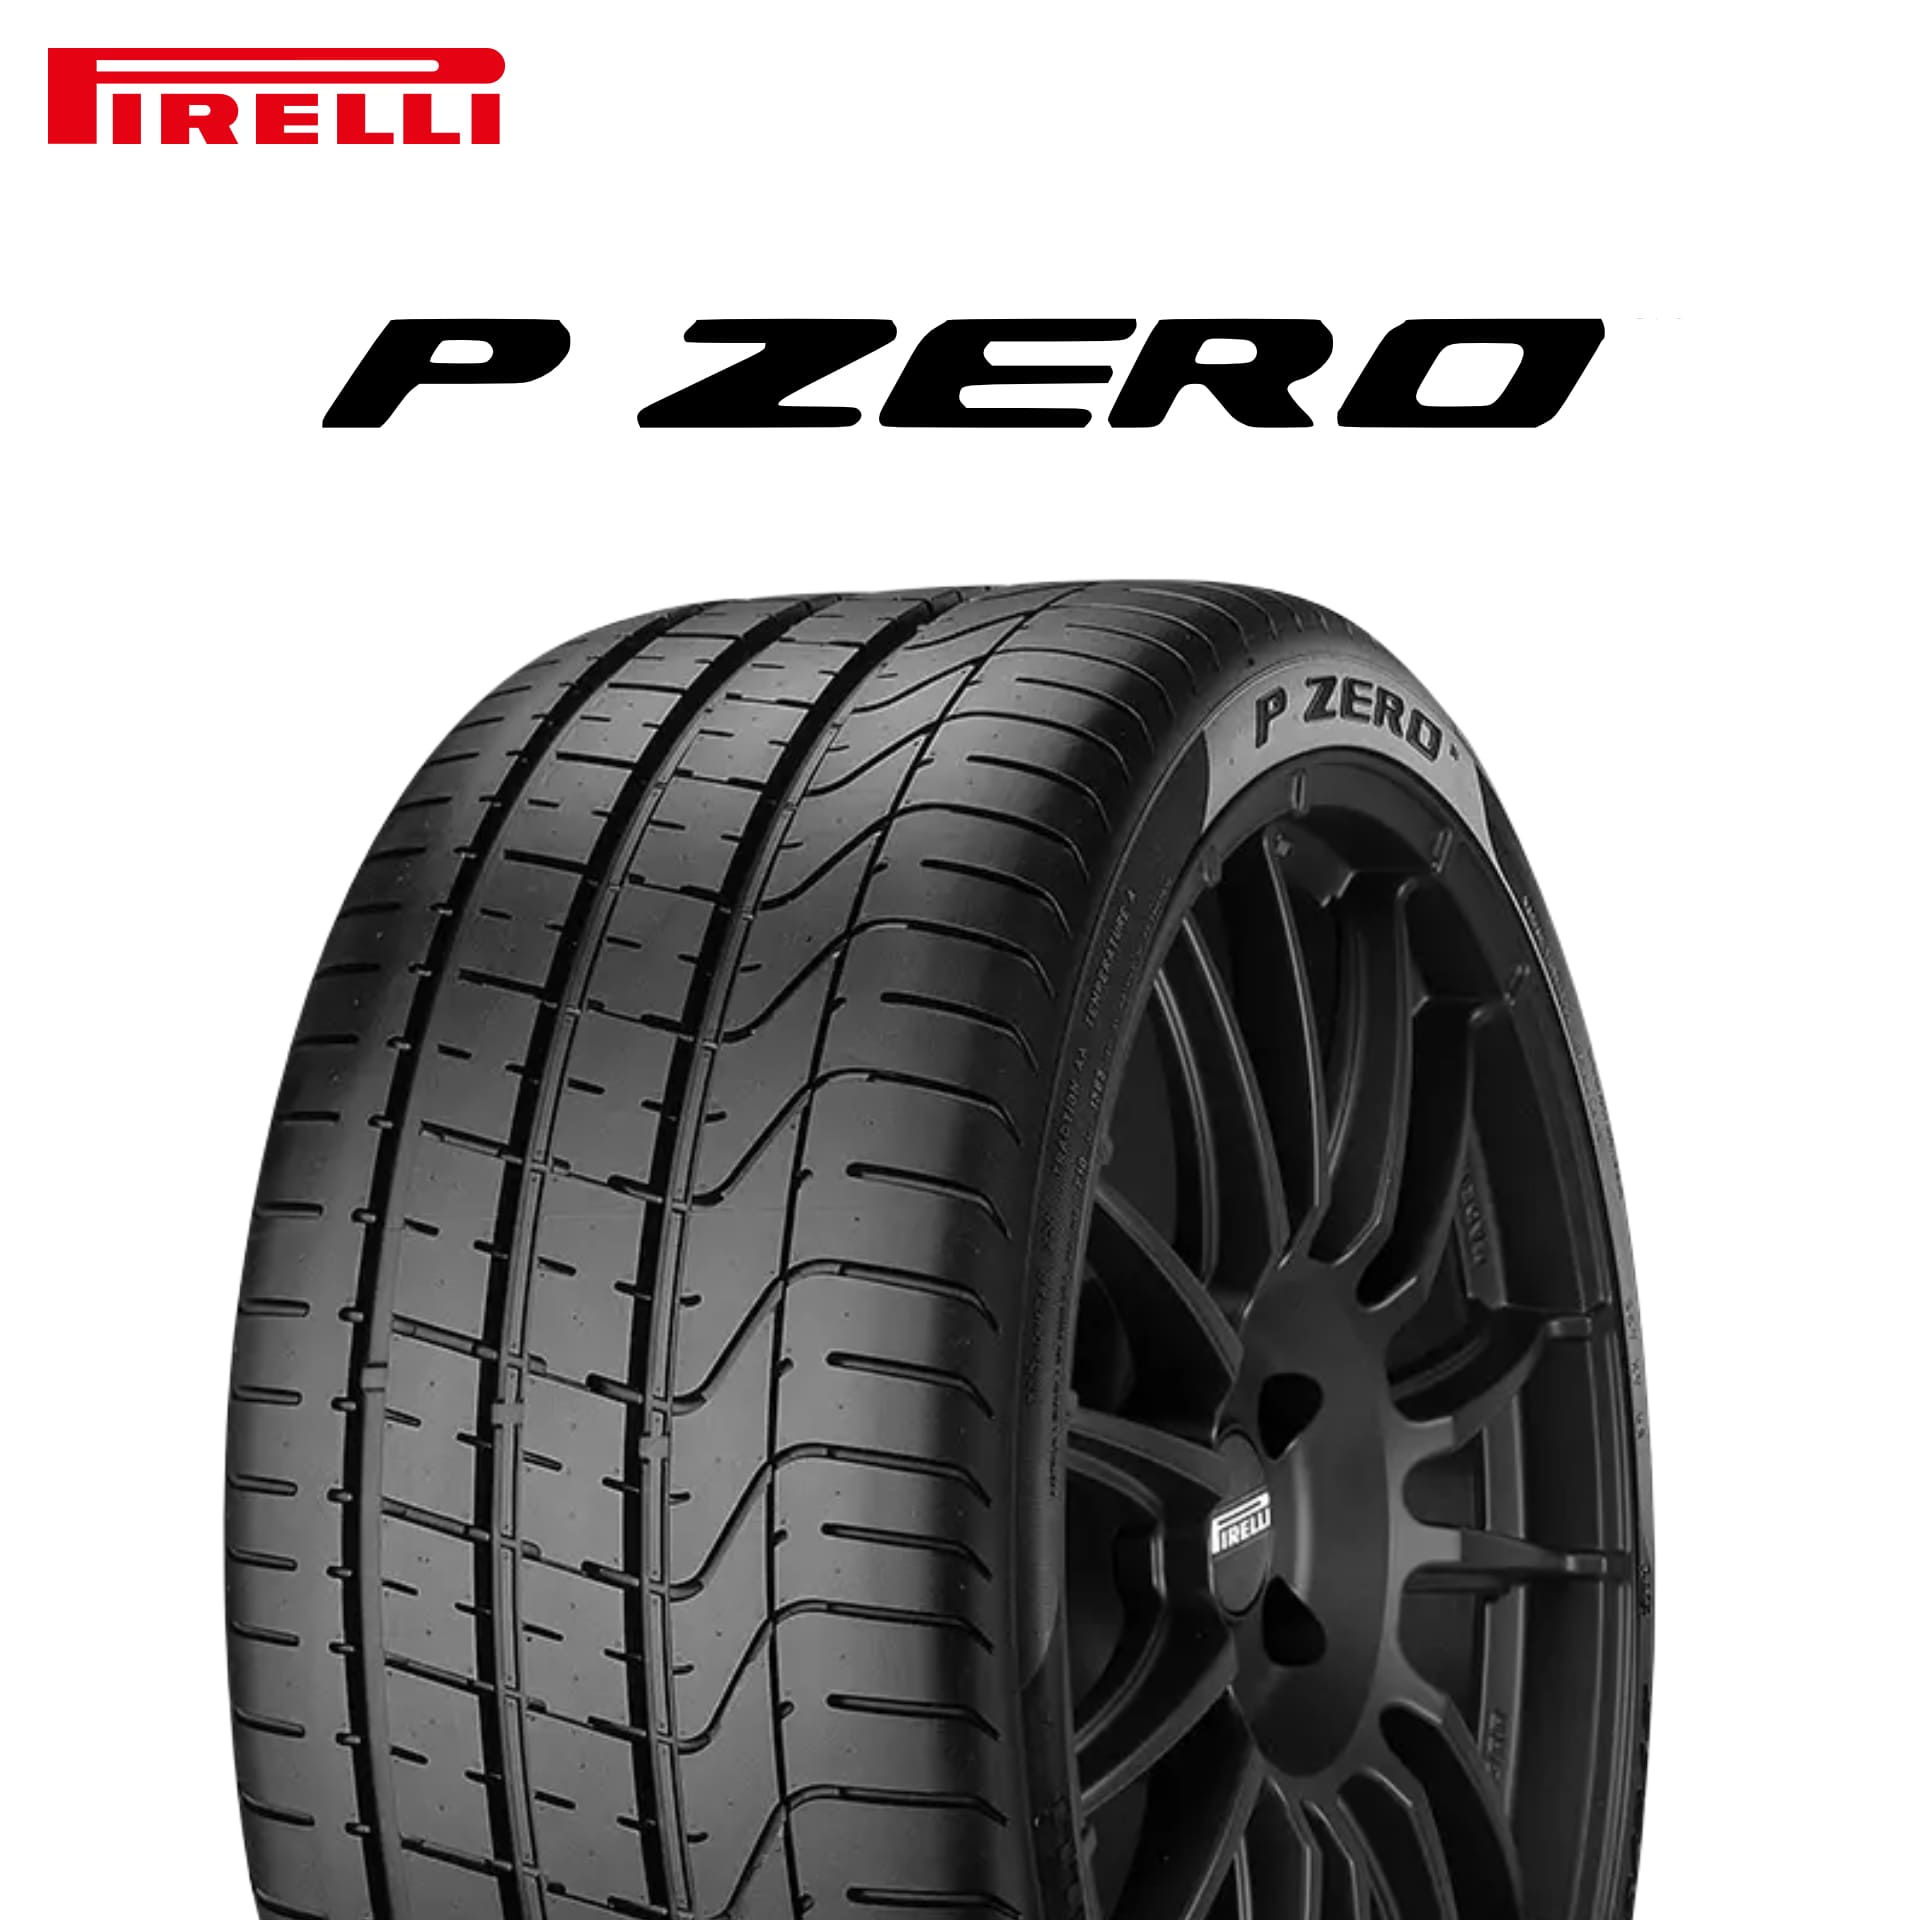 22年製 245/40R18 97Y XL MO ピレリ P ZERO (ピーゼロ) メルセデスベンツ承認タイヤ 18インチ 新品